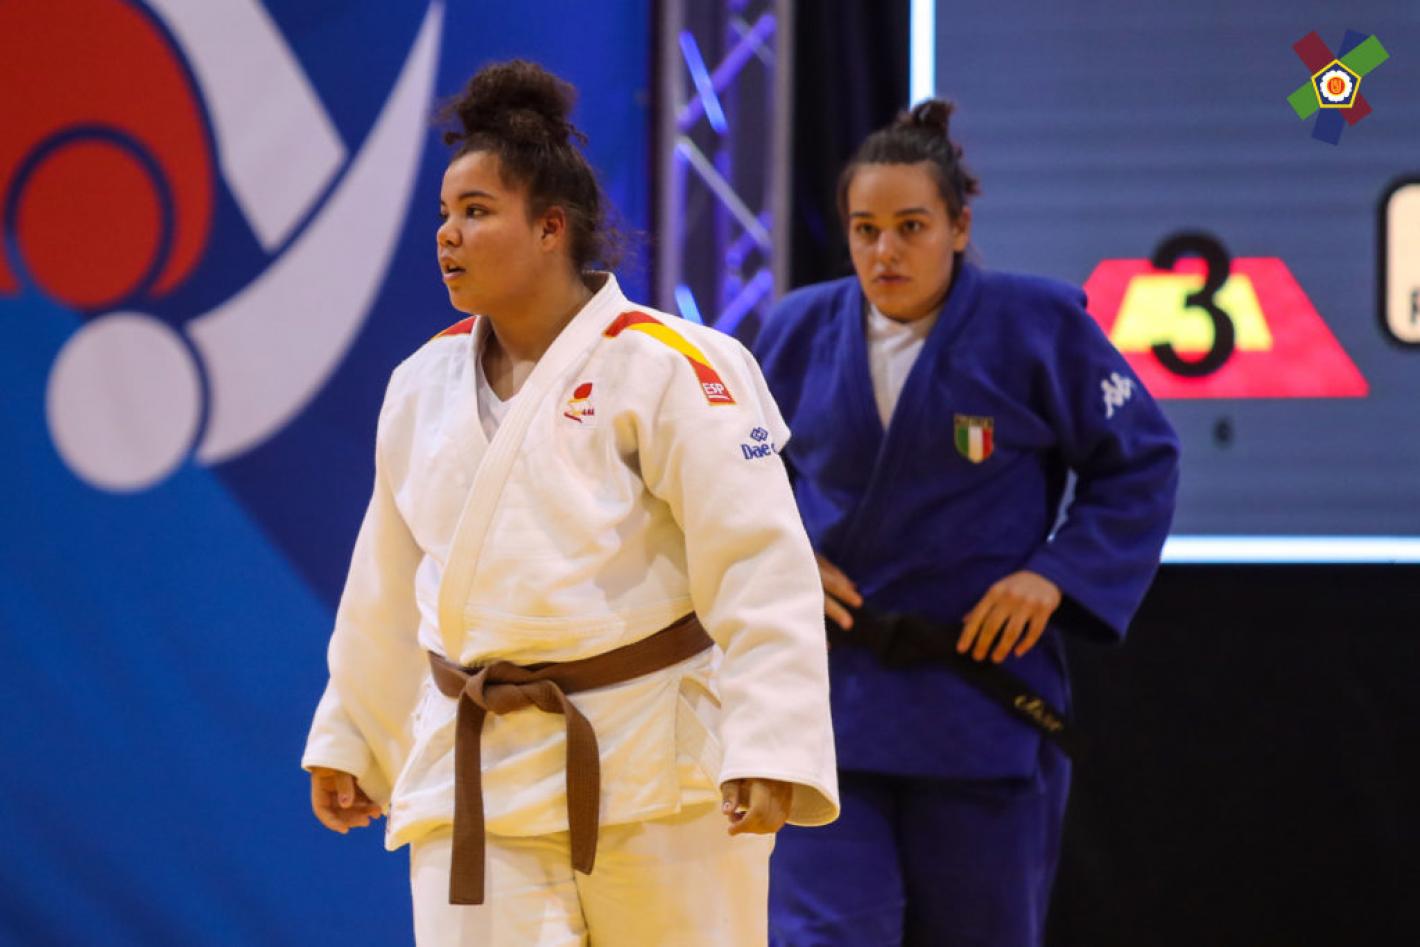 images/friuli_venezia_giulia/2020/medium/Junior-European-Judo-Championships-181885.jpg